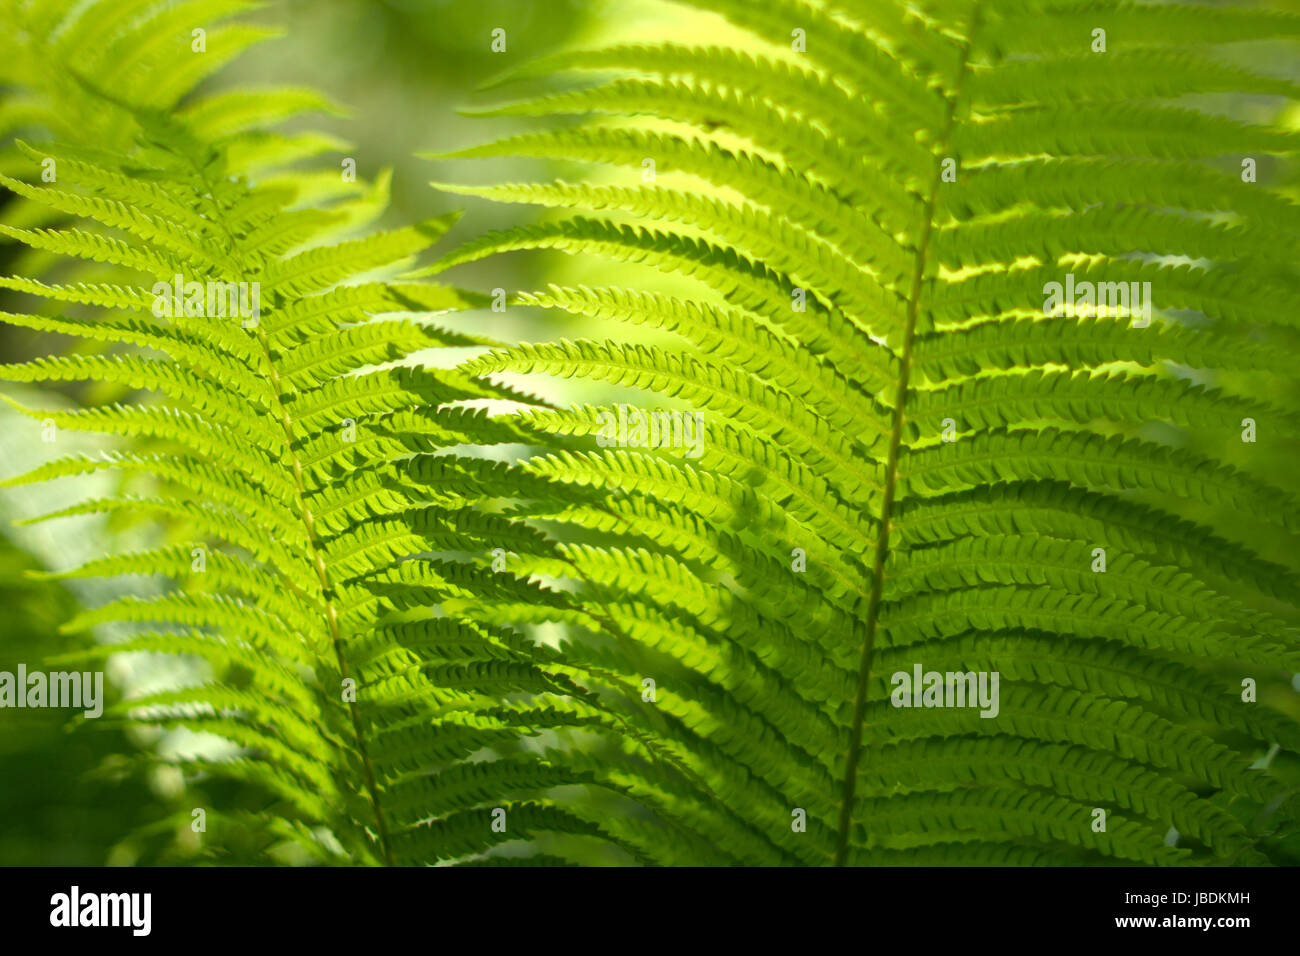 Verschwommen, abstrakten Hintergrund mit einem zarten Farn-Motiv. Dichte, üppige, grüne Vegetation im Garten. Die dominierende Farbe grün. Stockfoto